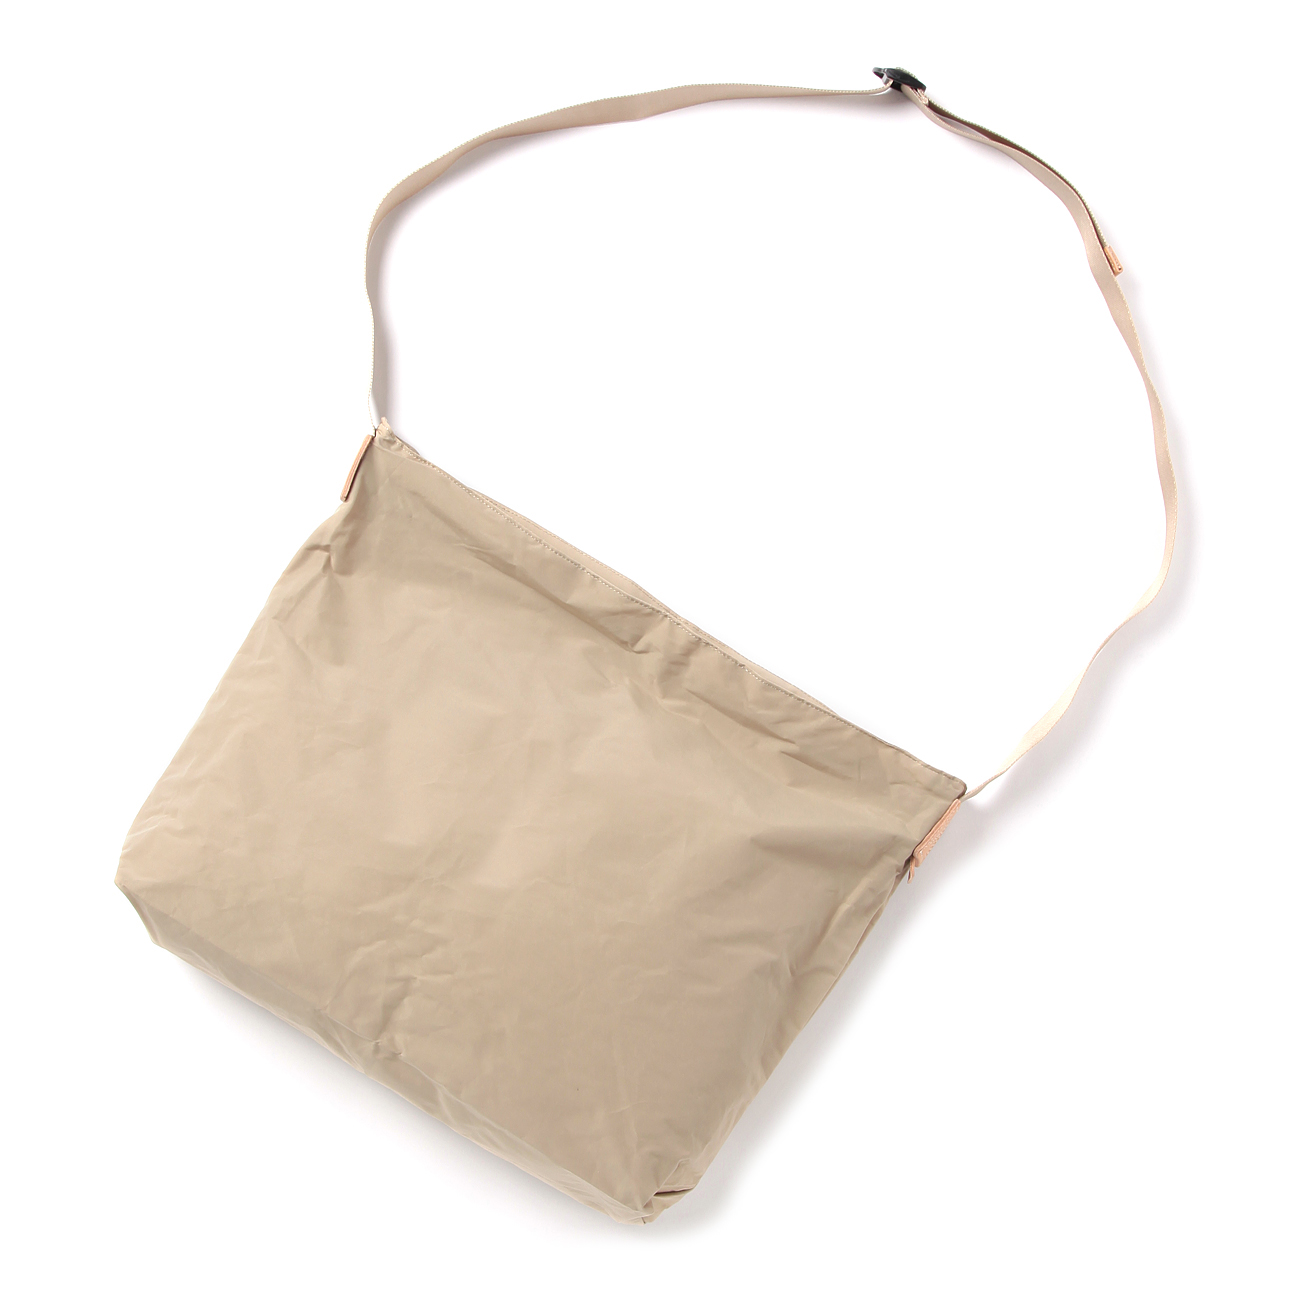 all purpose shoulder bag - Beige